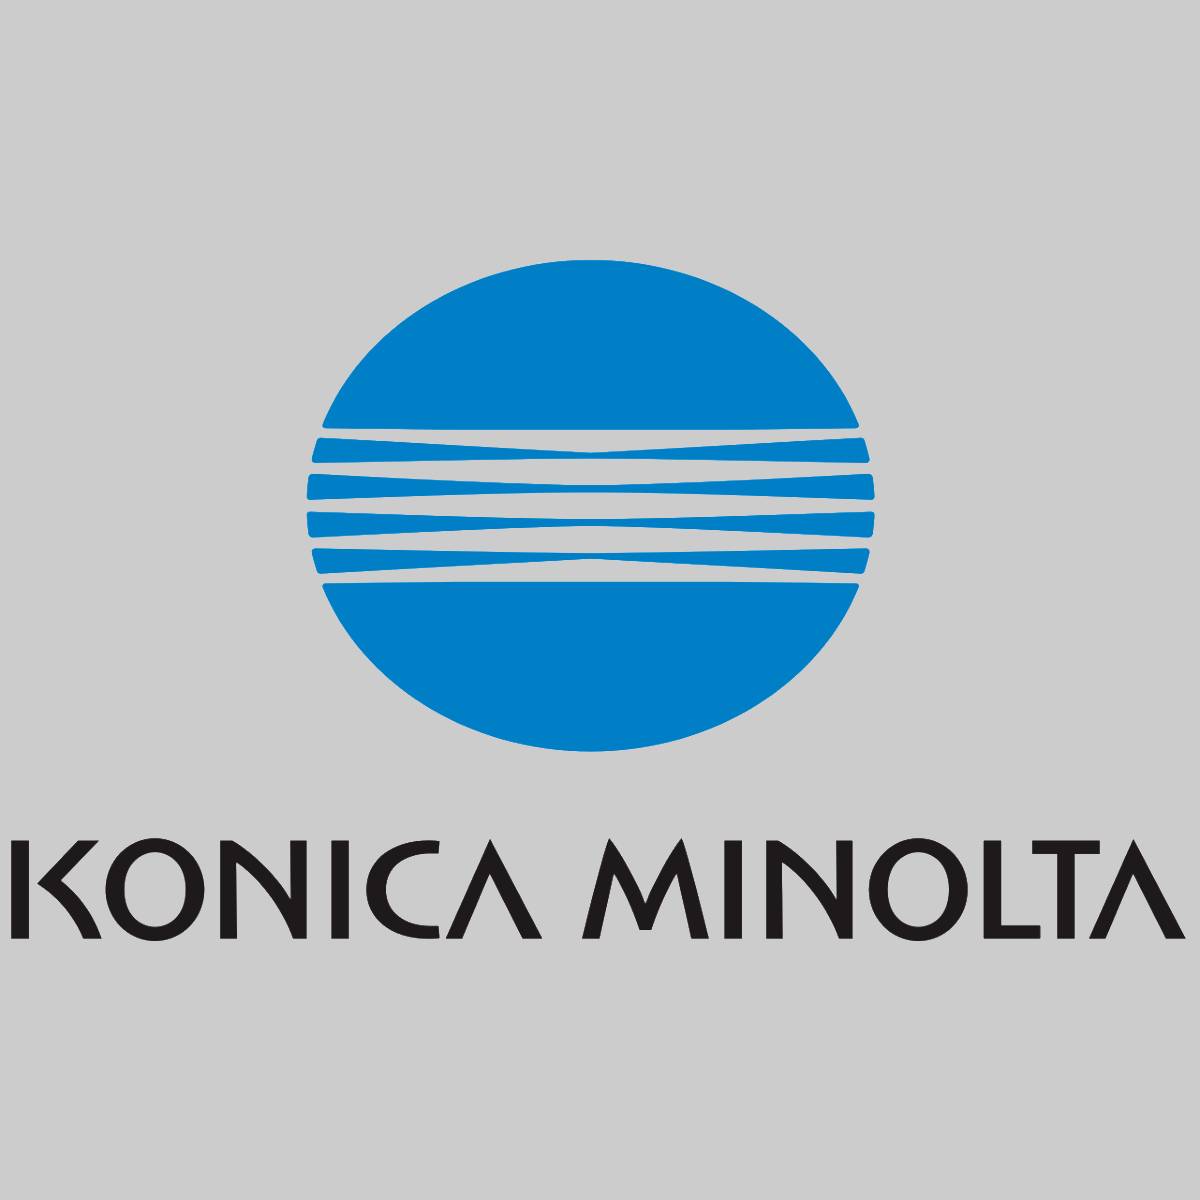 "Original Konica Minolta Toner Magenta A0V30AH Magicolor 1600 NEU OVP